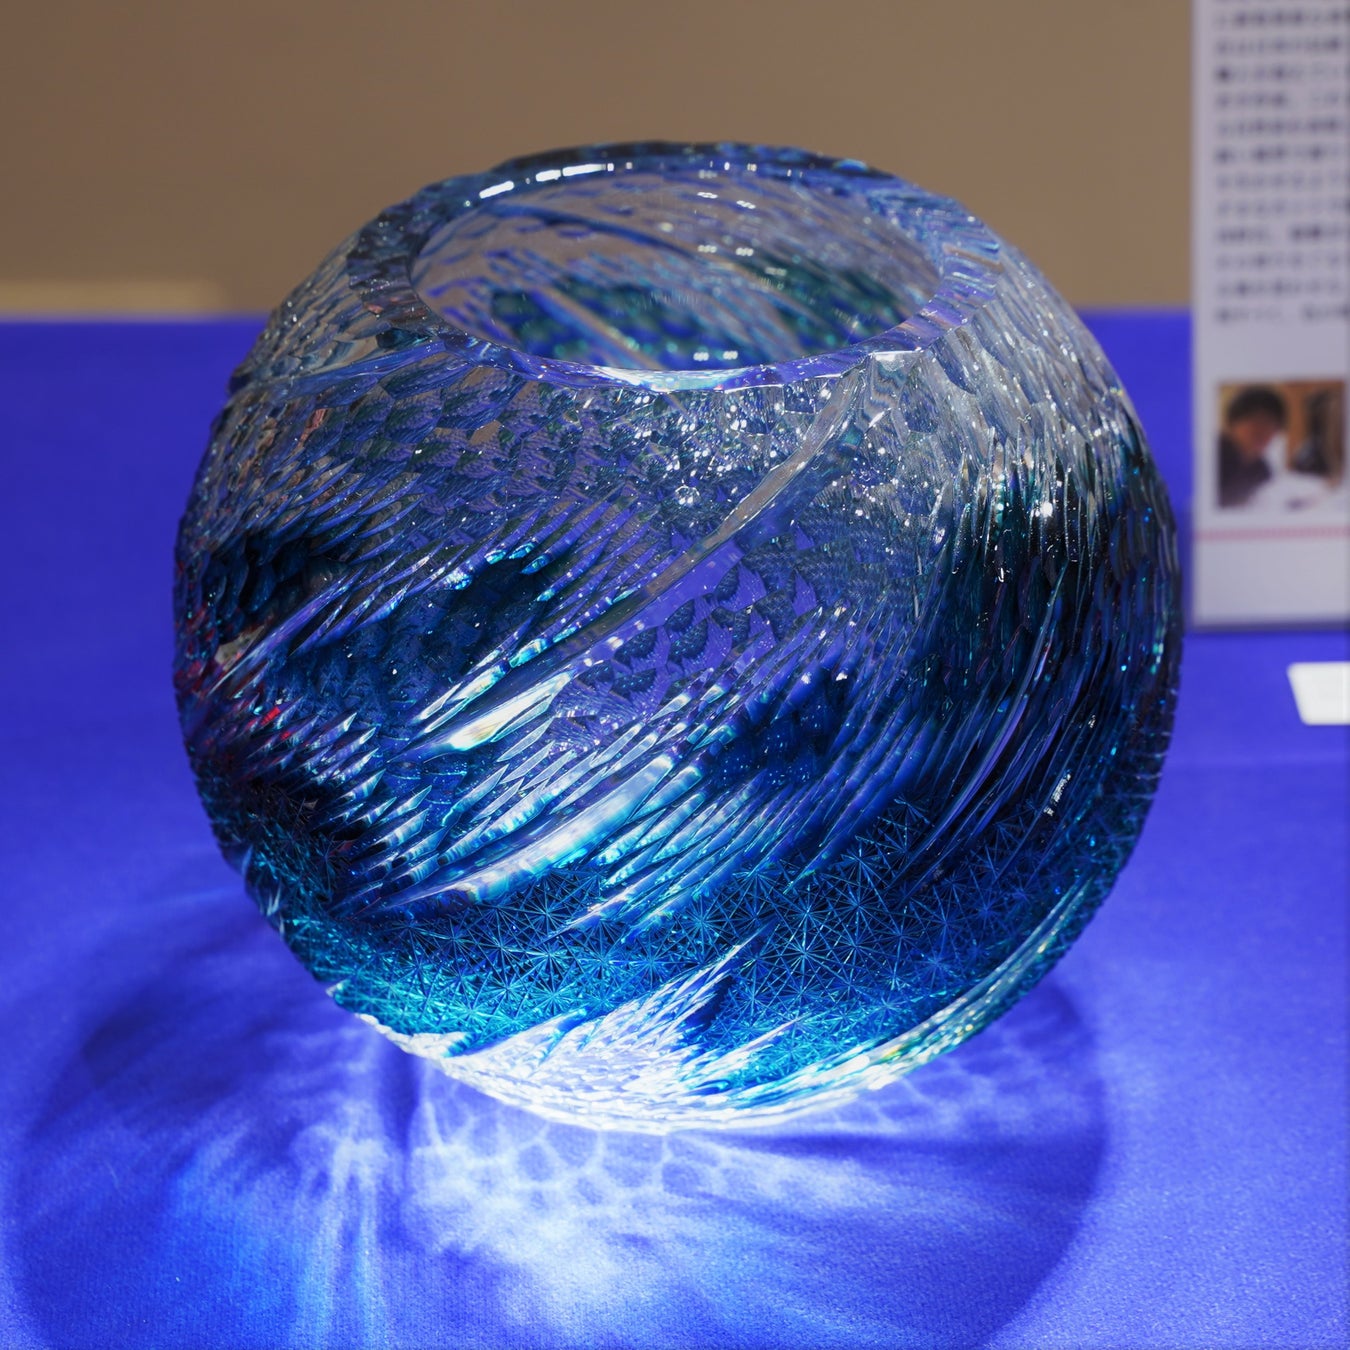 江戸切子ショールーム　新作展受賞作品展示のおしらせ　最高賞受賞を含む4作品を12月まで